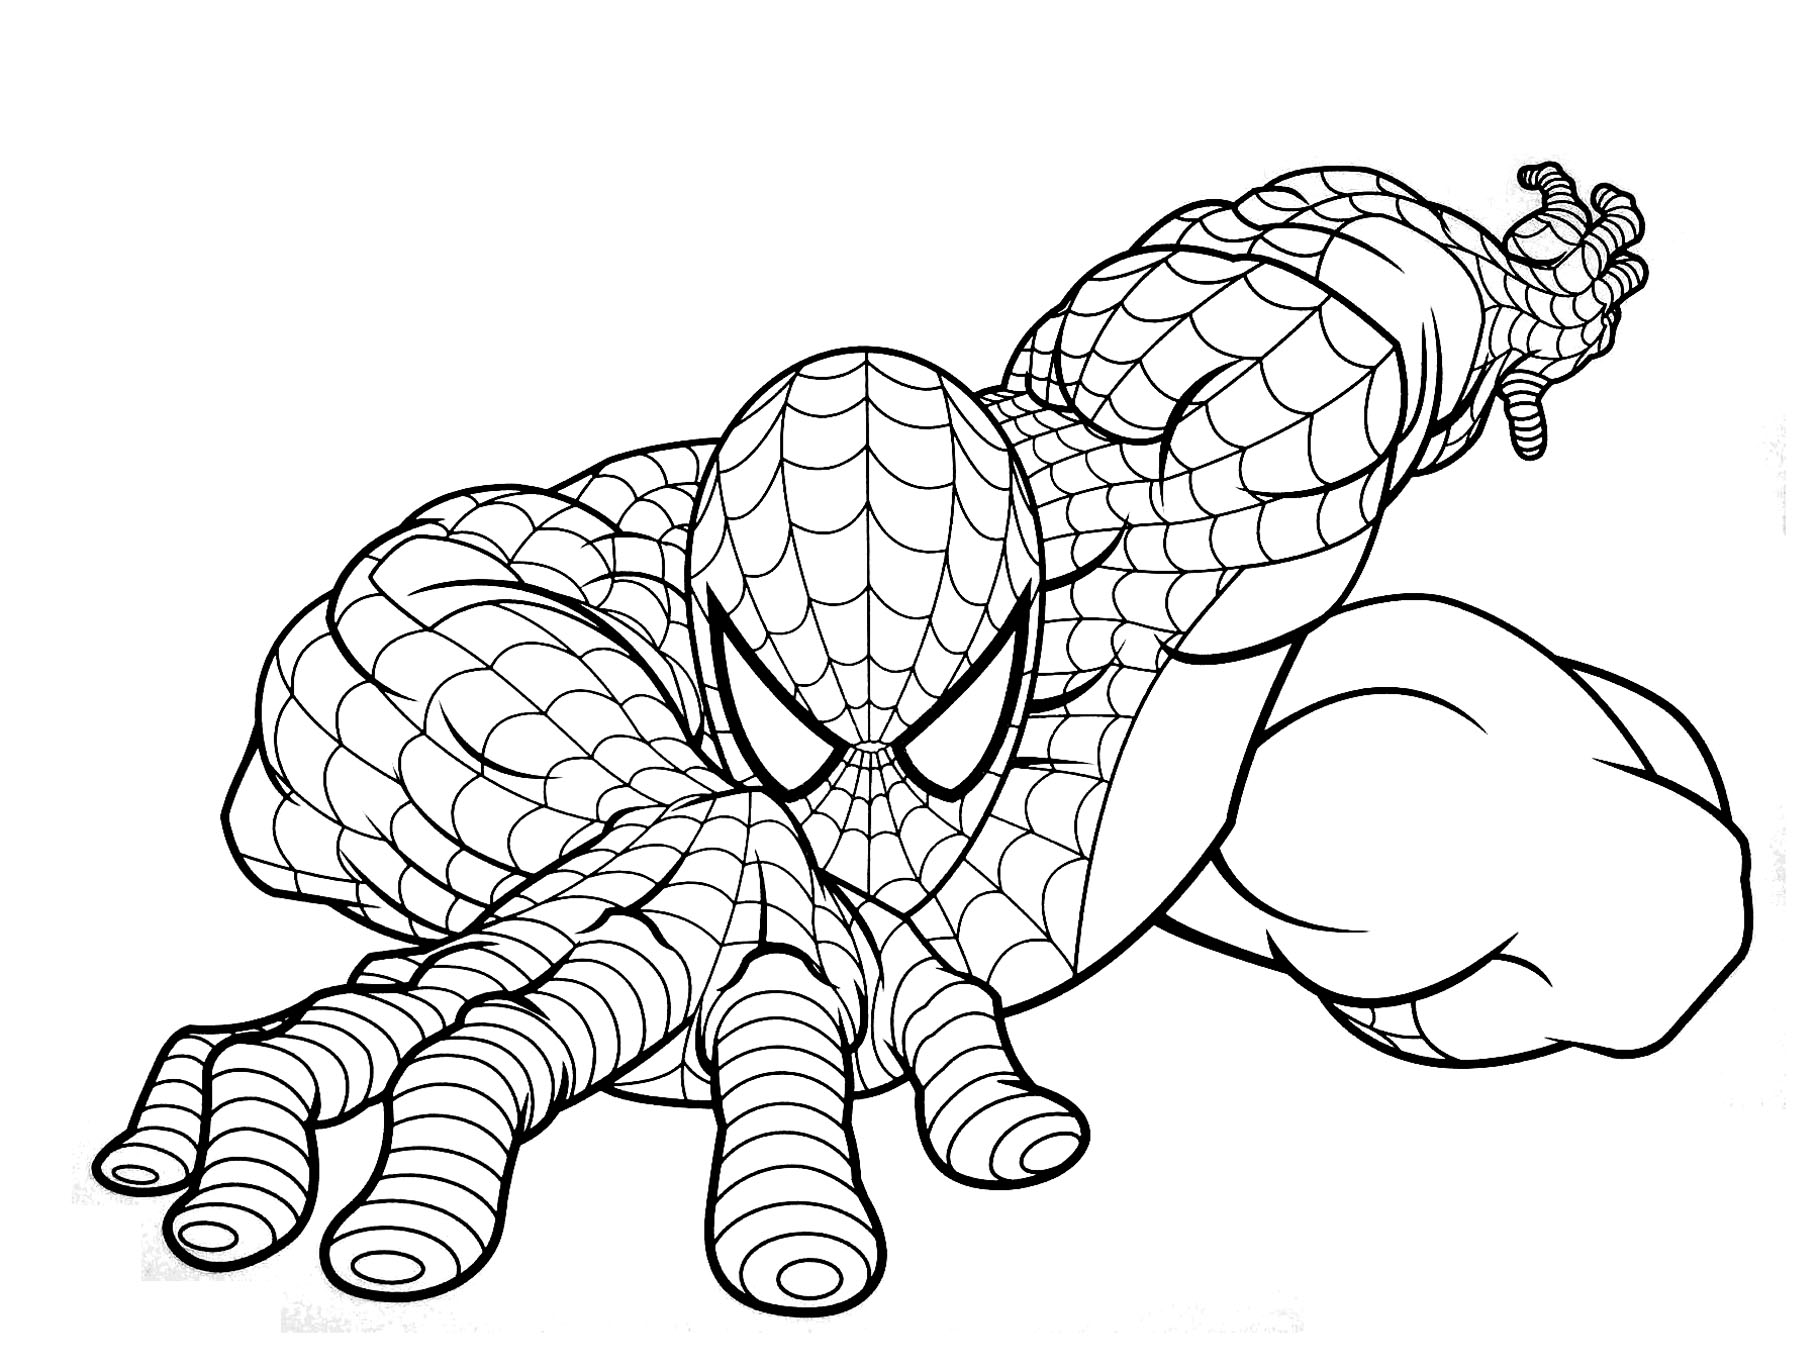 Dibujos de Spiderman para colorear 1 2